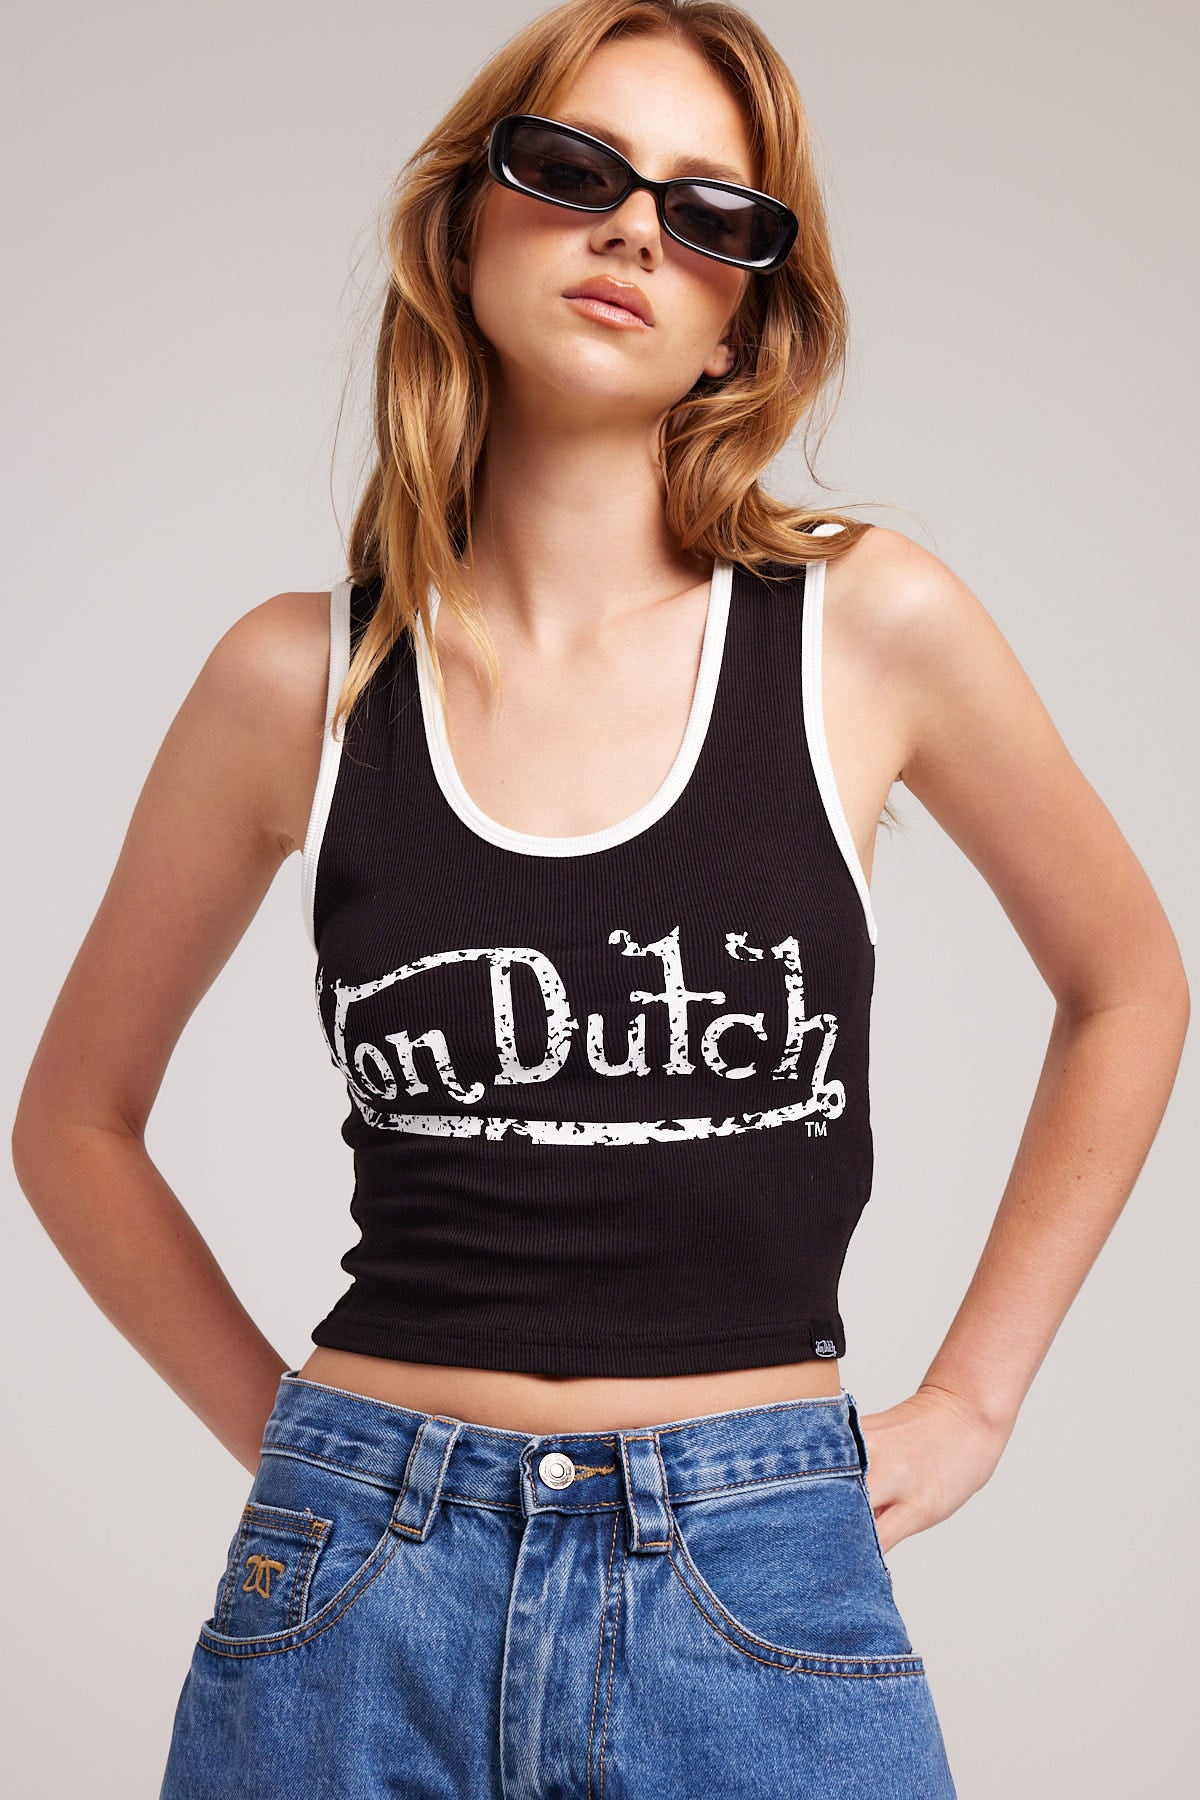 Von Dutch Womens Vest Black